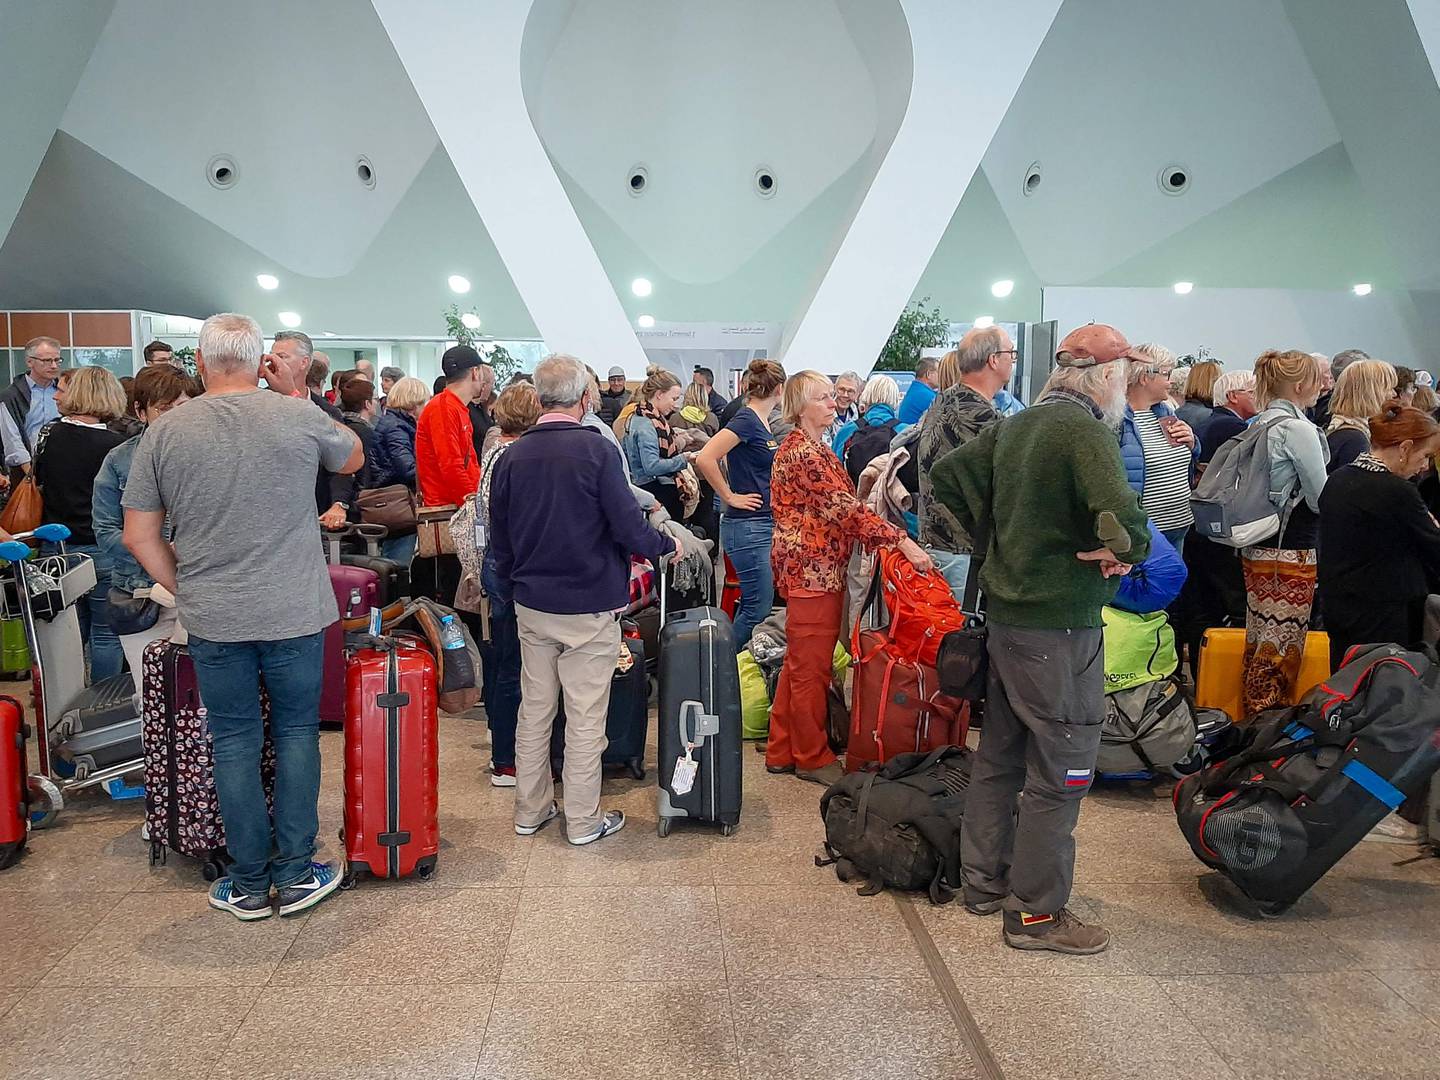 Les passagers attendent leurs vols à l'aéroport de Marrakech sur cette photo d'archive prise le 15 mars 2020. Le Maroc a décidé de suspendre tous les vols commerciaux entrants de passagers pendant une période de deux semaines en raison de la nouvelle variante Covid-19.  Photo : AFP